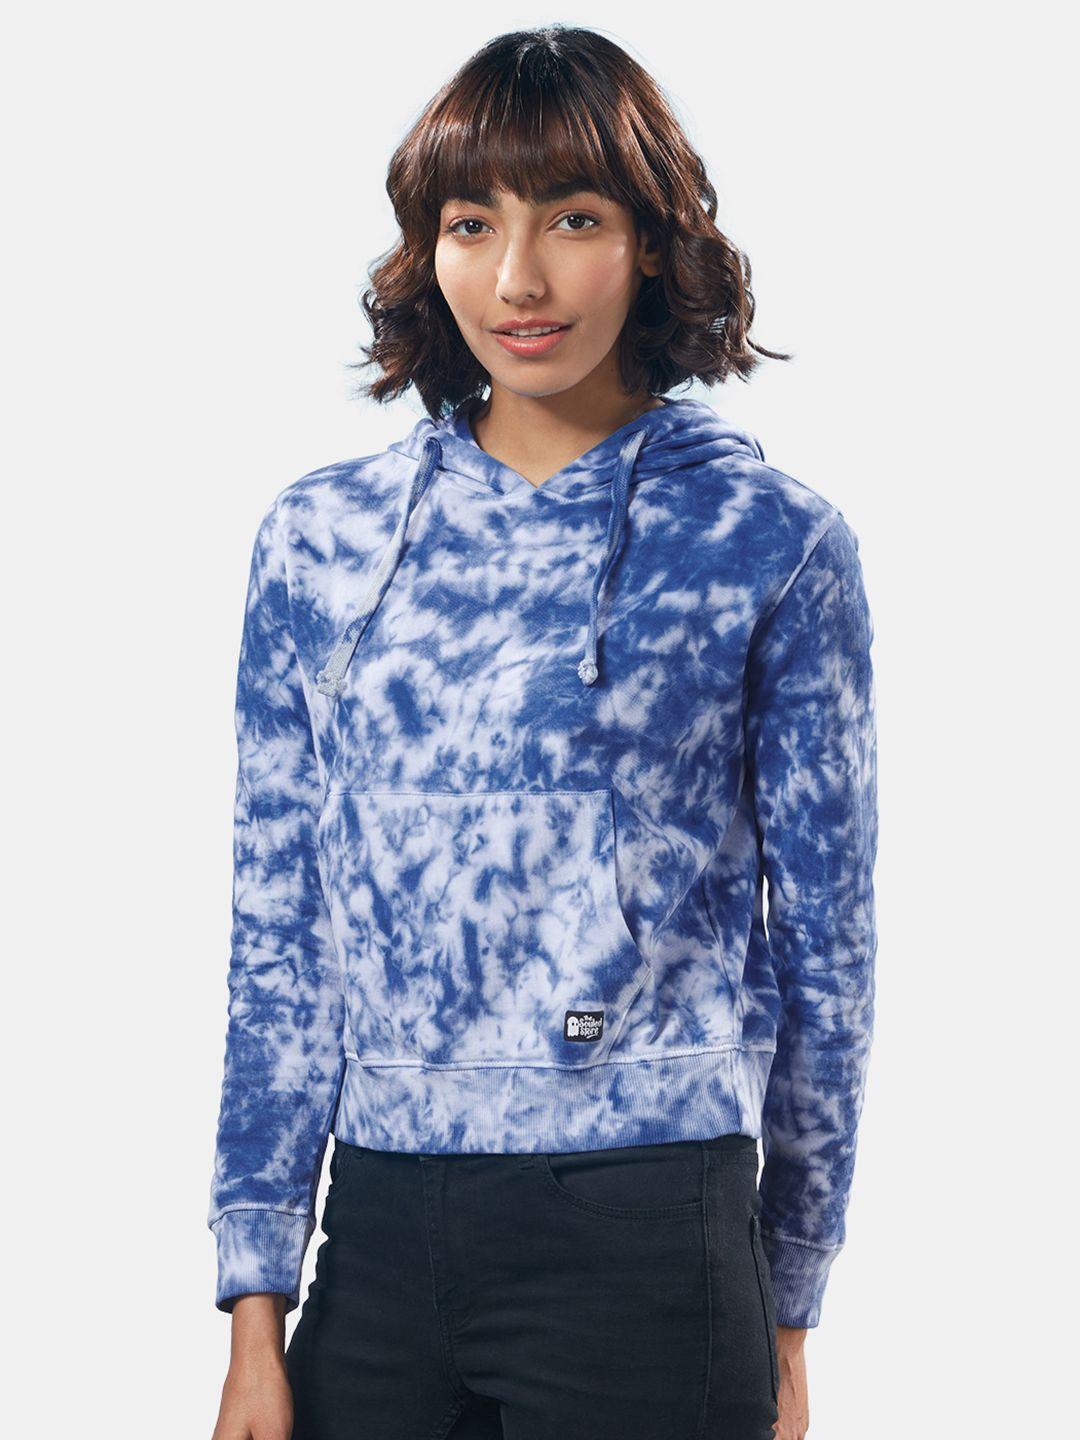 the-souled-store-women-blue-tie-&-dye-hooded-sweatshirt